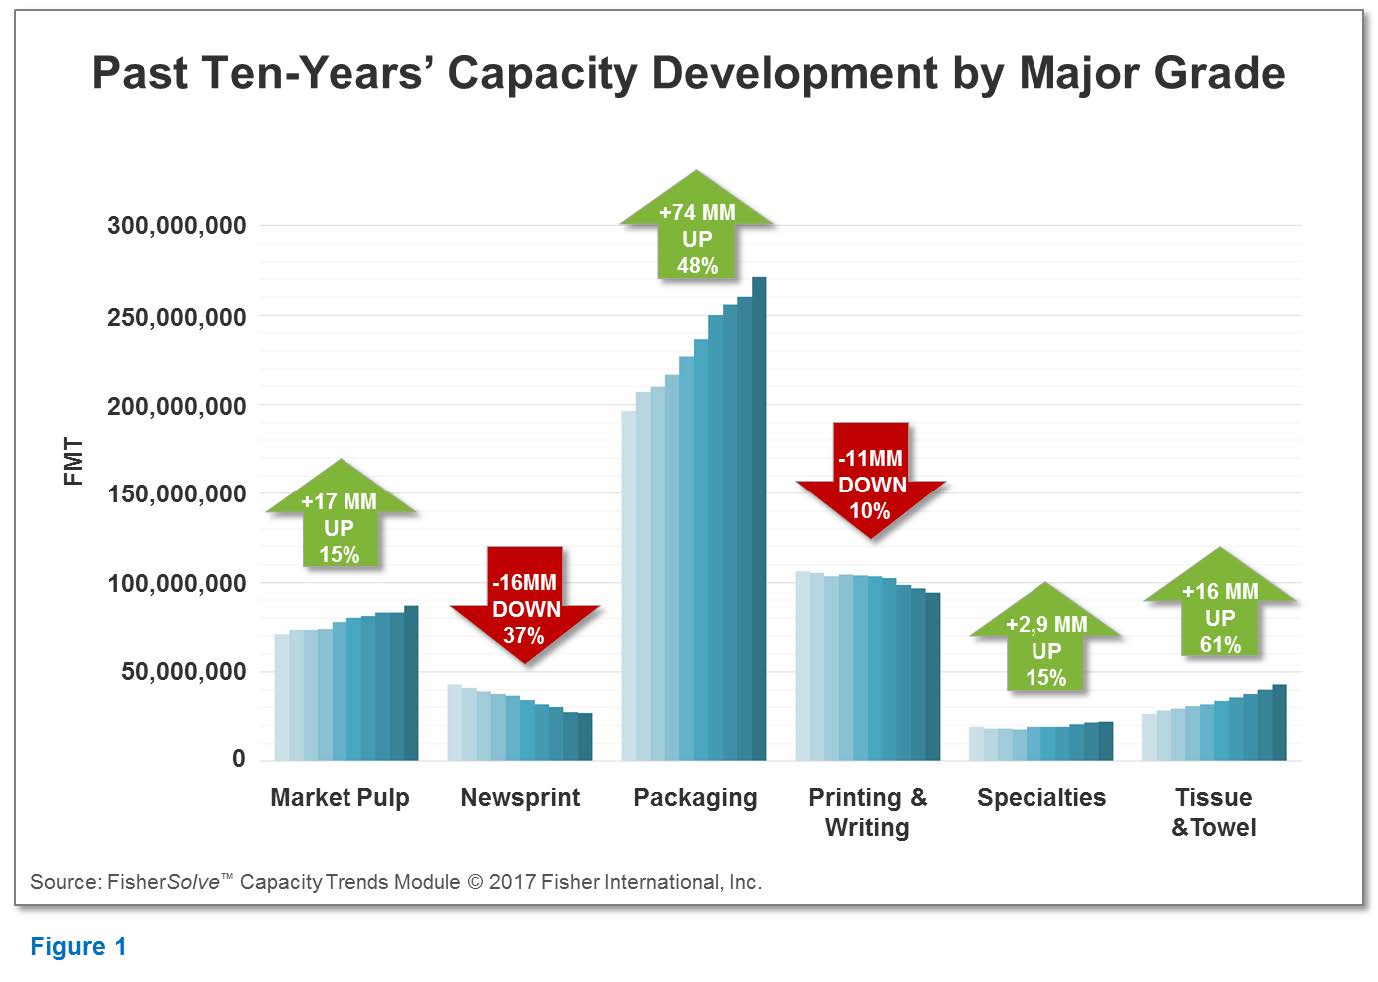 Capacity development